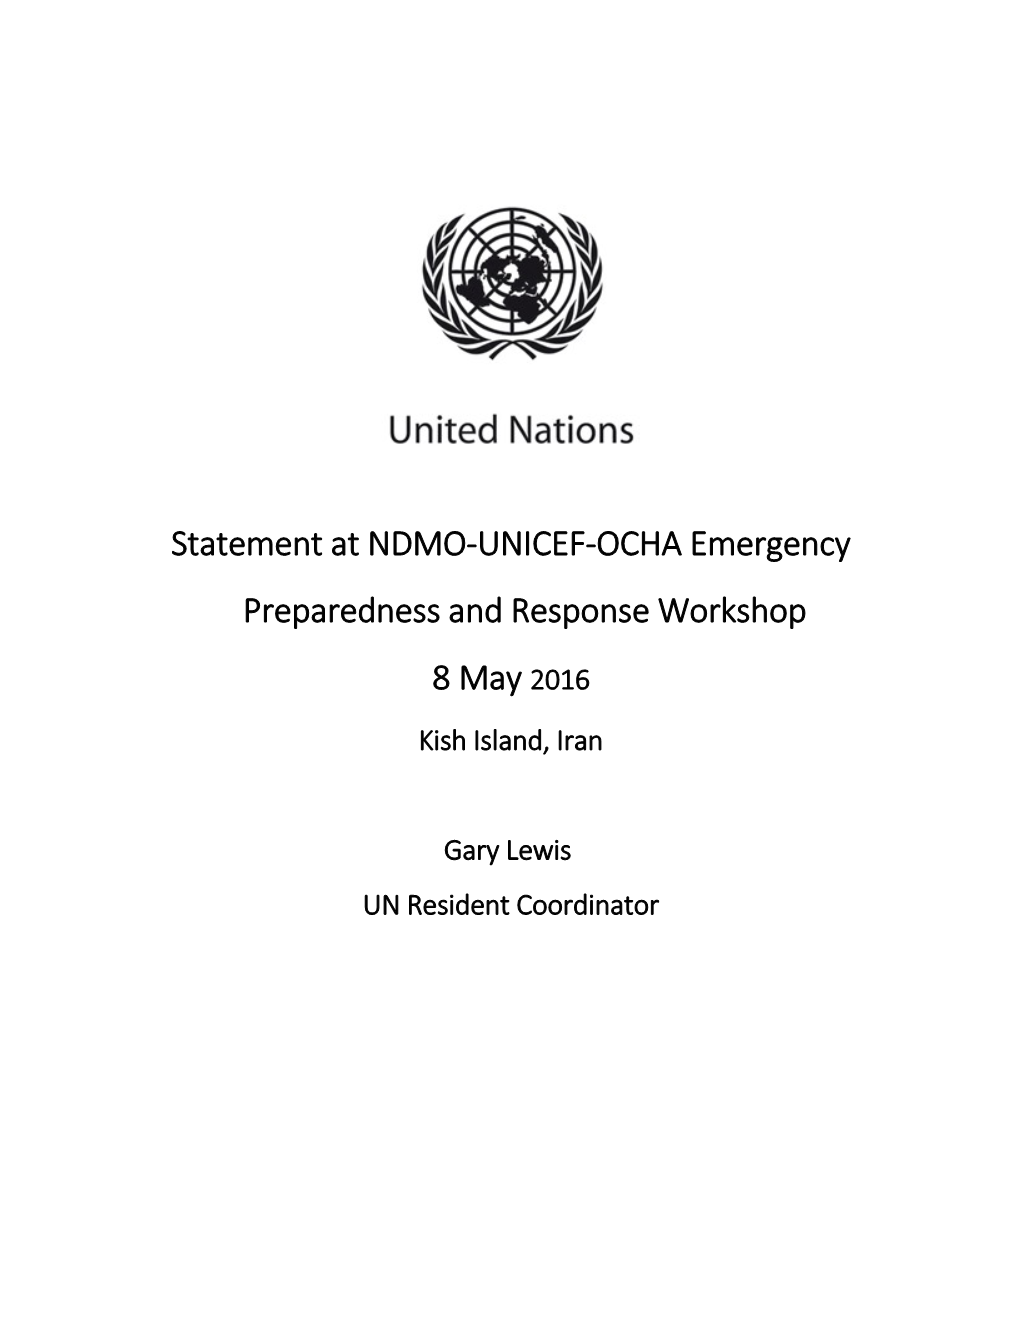 Statement at NDMO-UNICEF-OCHA Emergency Preparedness and Response Workshop